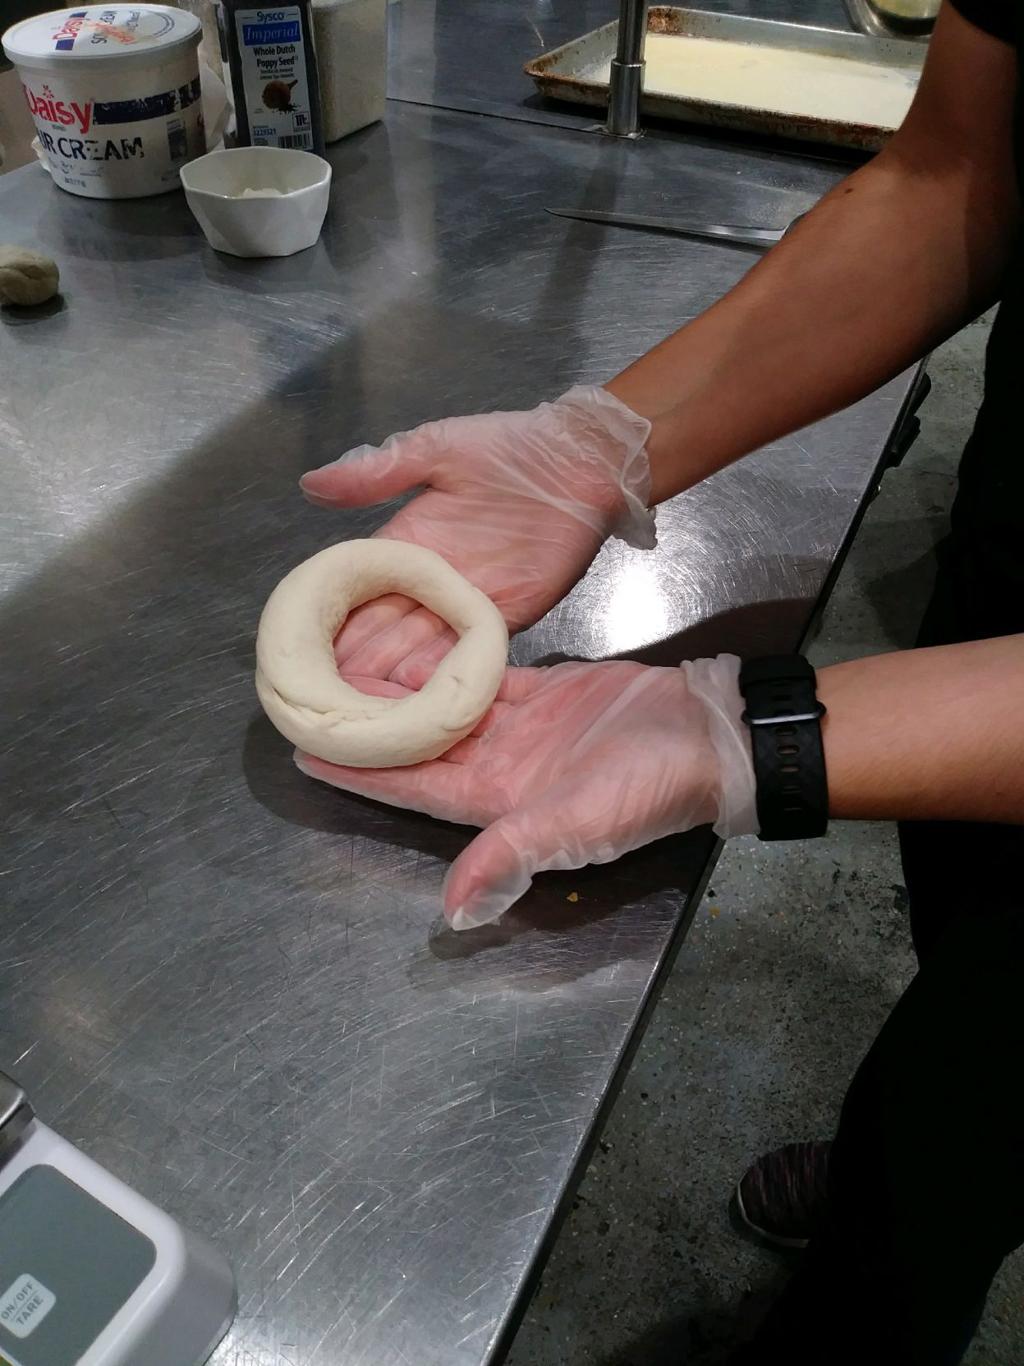 Making Bagels: Power City bagel maker shares some tips